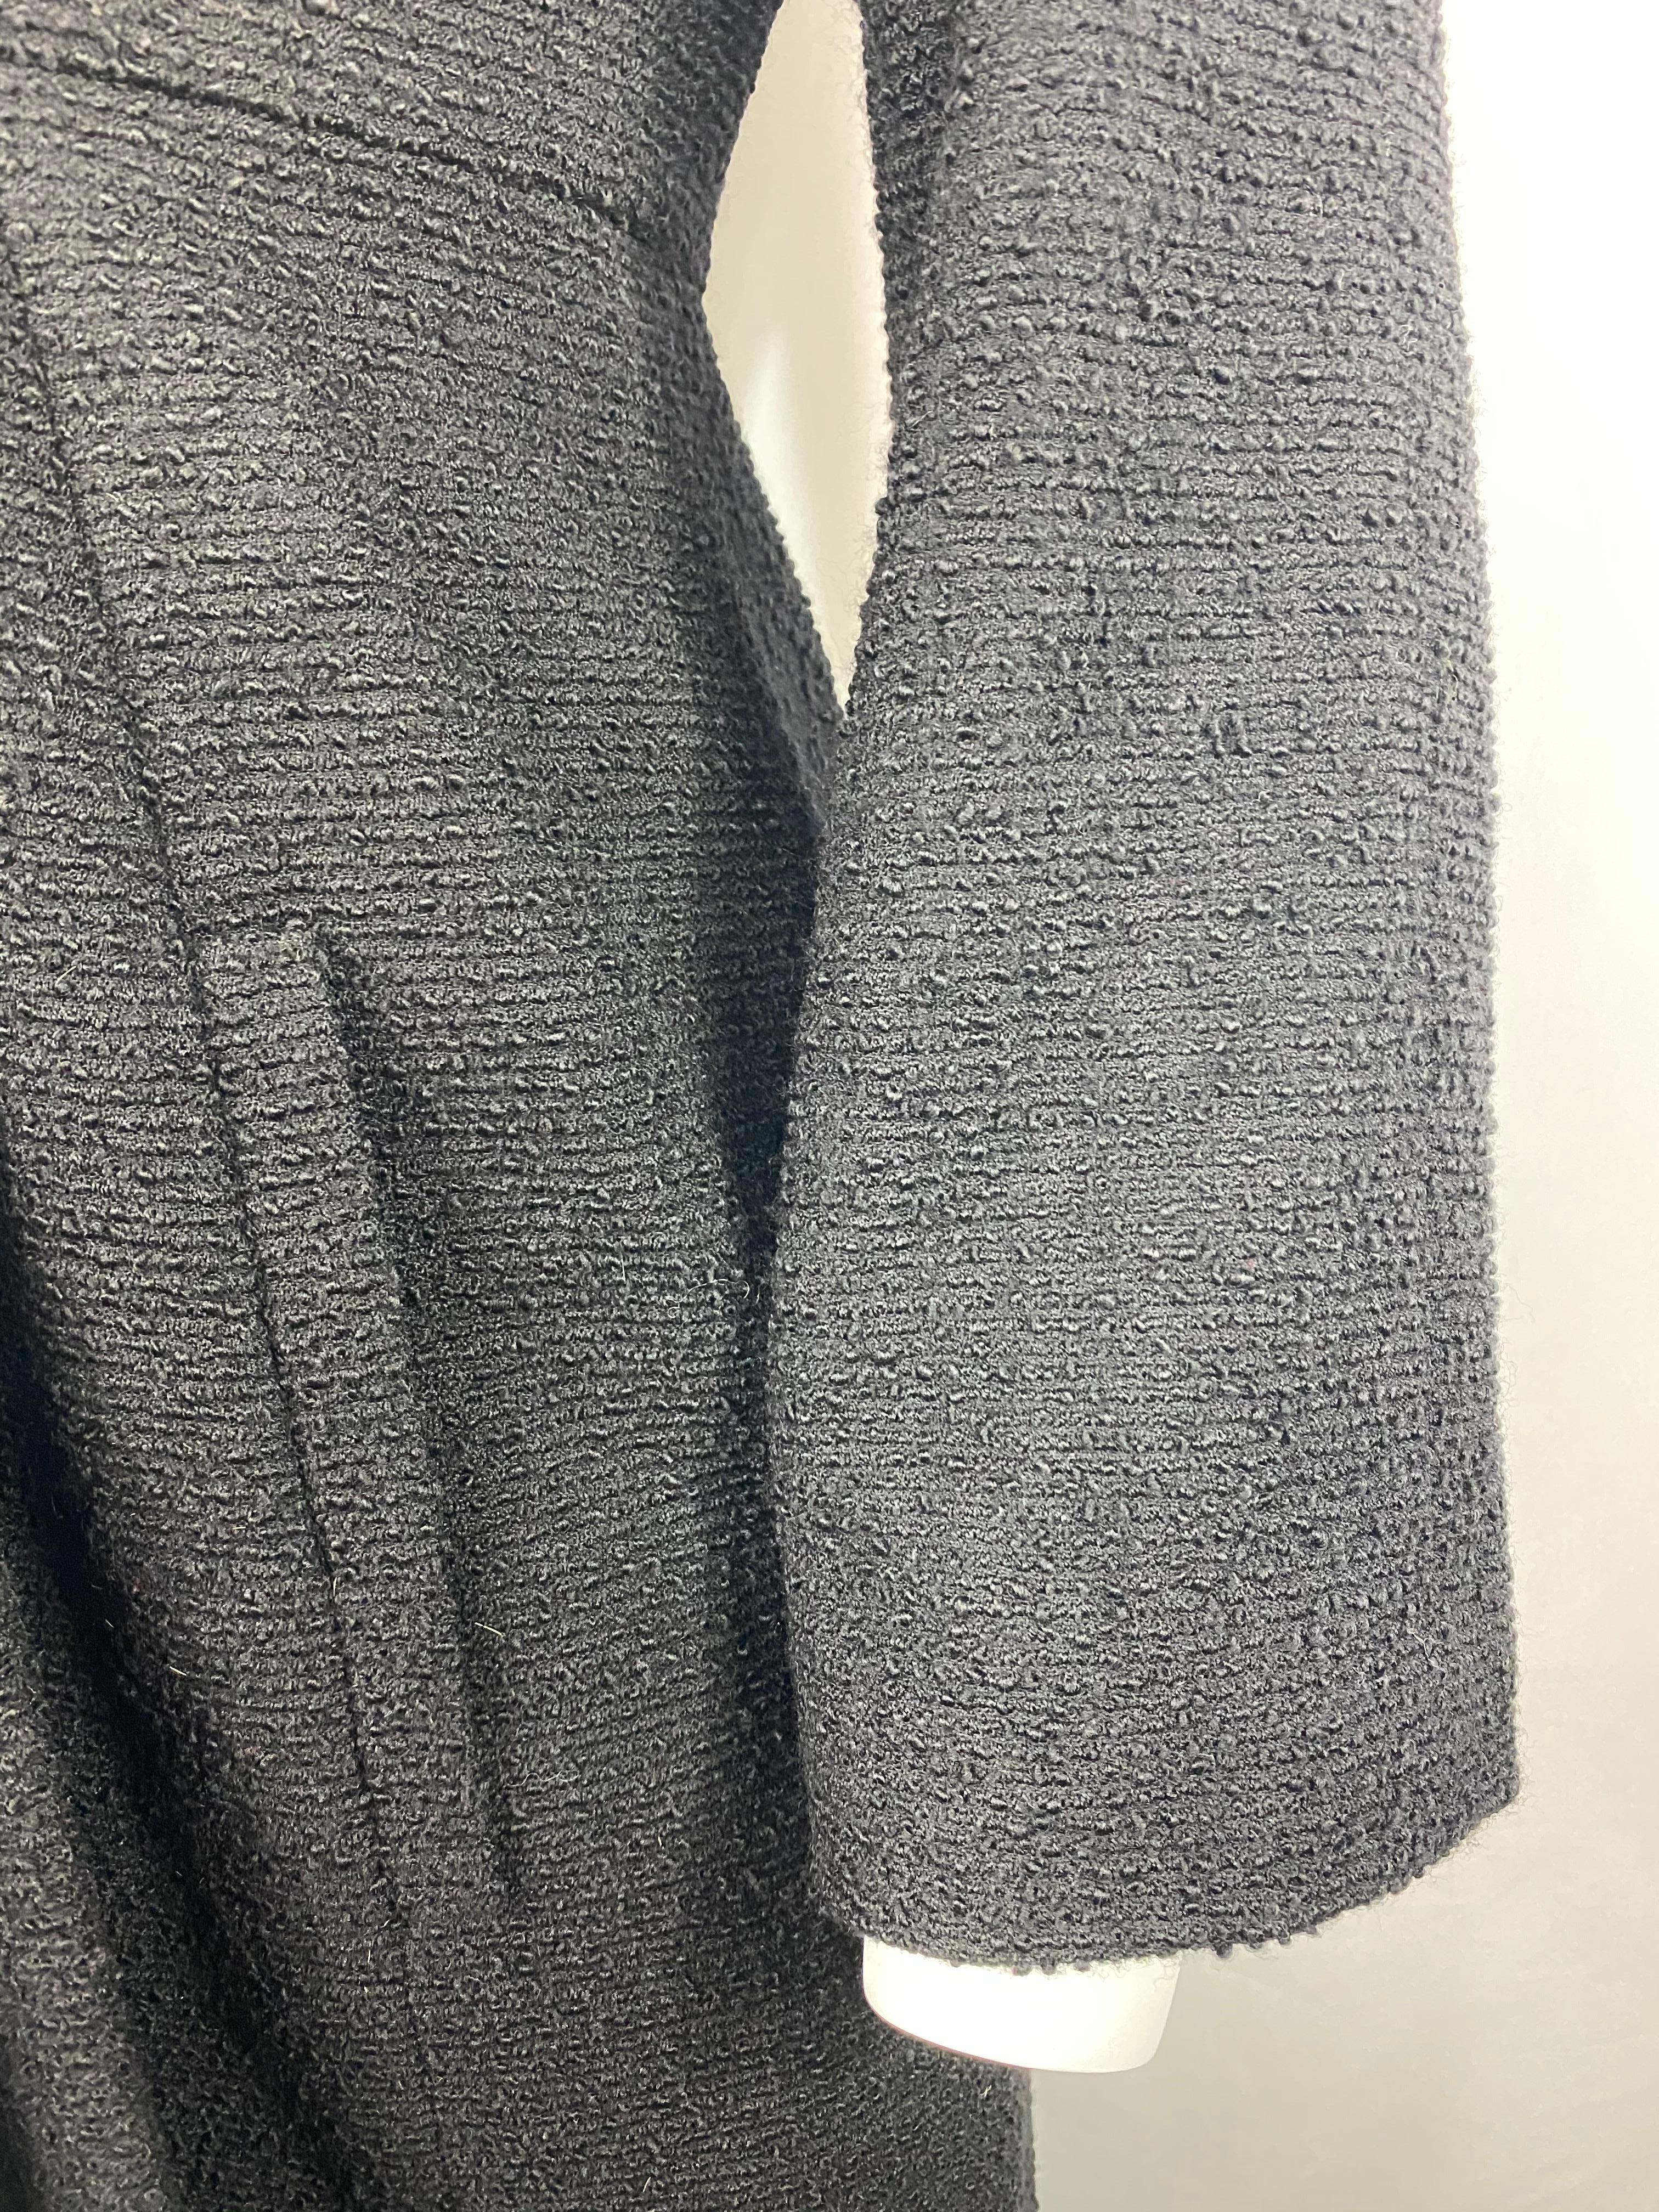 Christian Dior - Veste manteau en tweed de laine noir et fourrure, taille 40 6